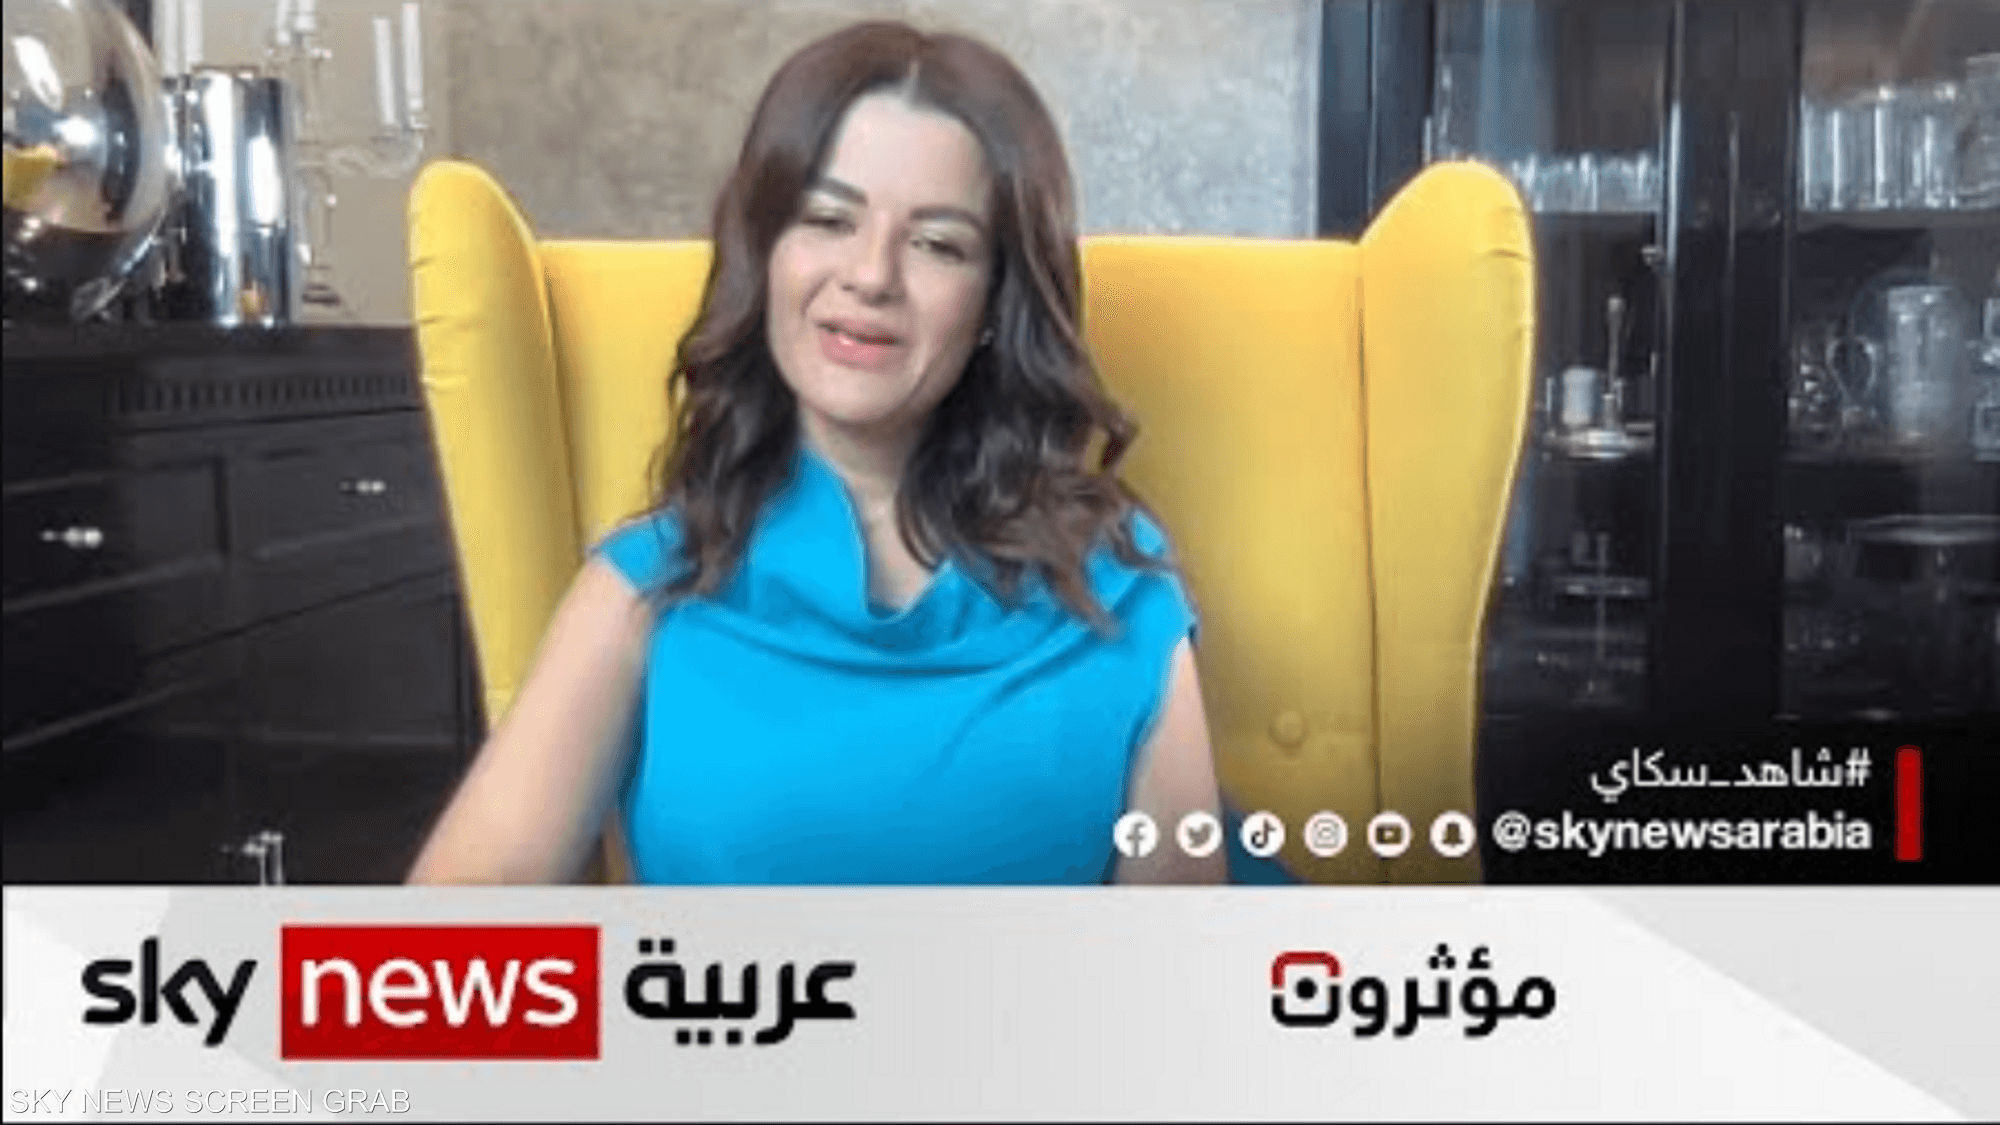 سارة عبدالله.. محتوى لدعم المرأة العربية بأسلوب فريد